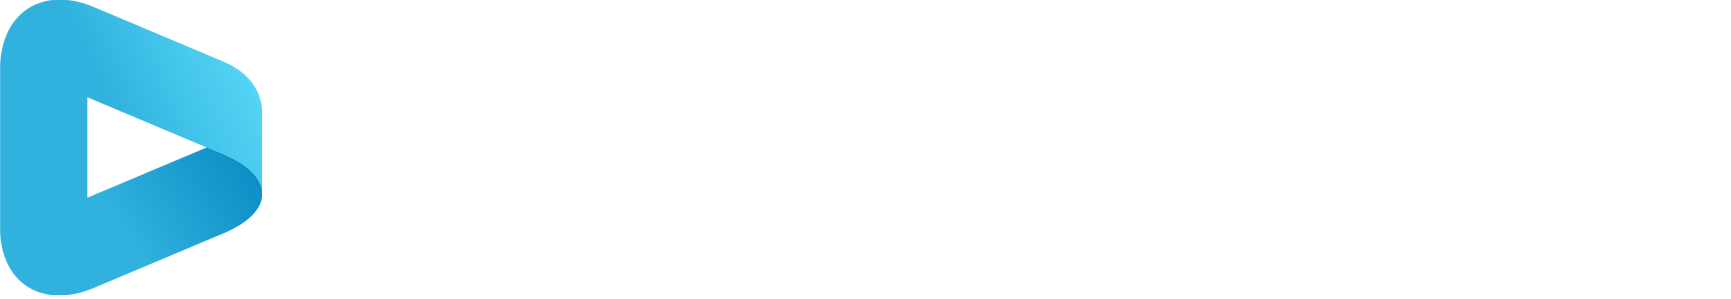 Logo digiconn weiß